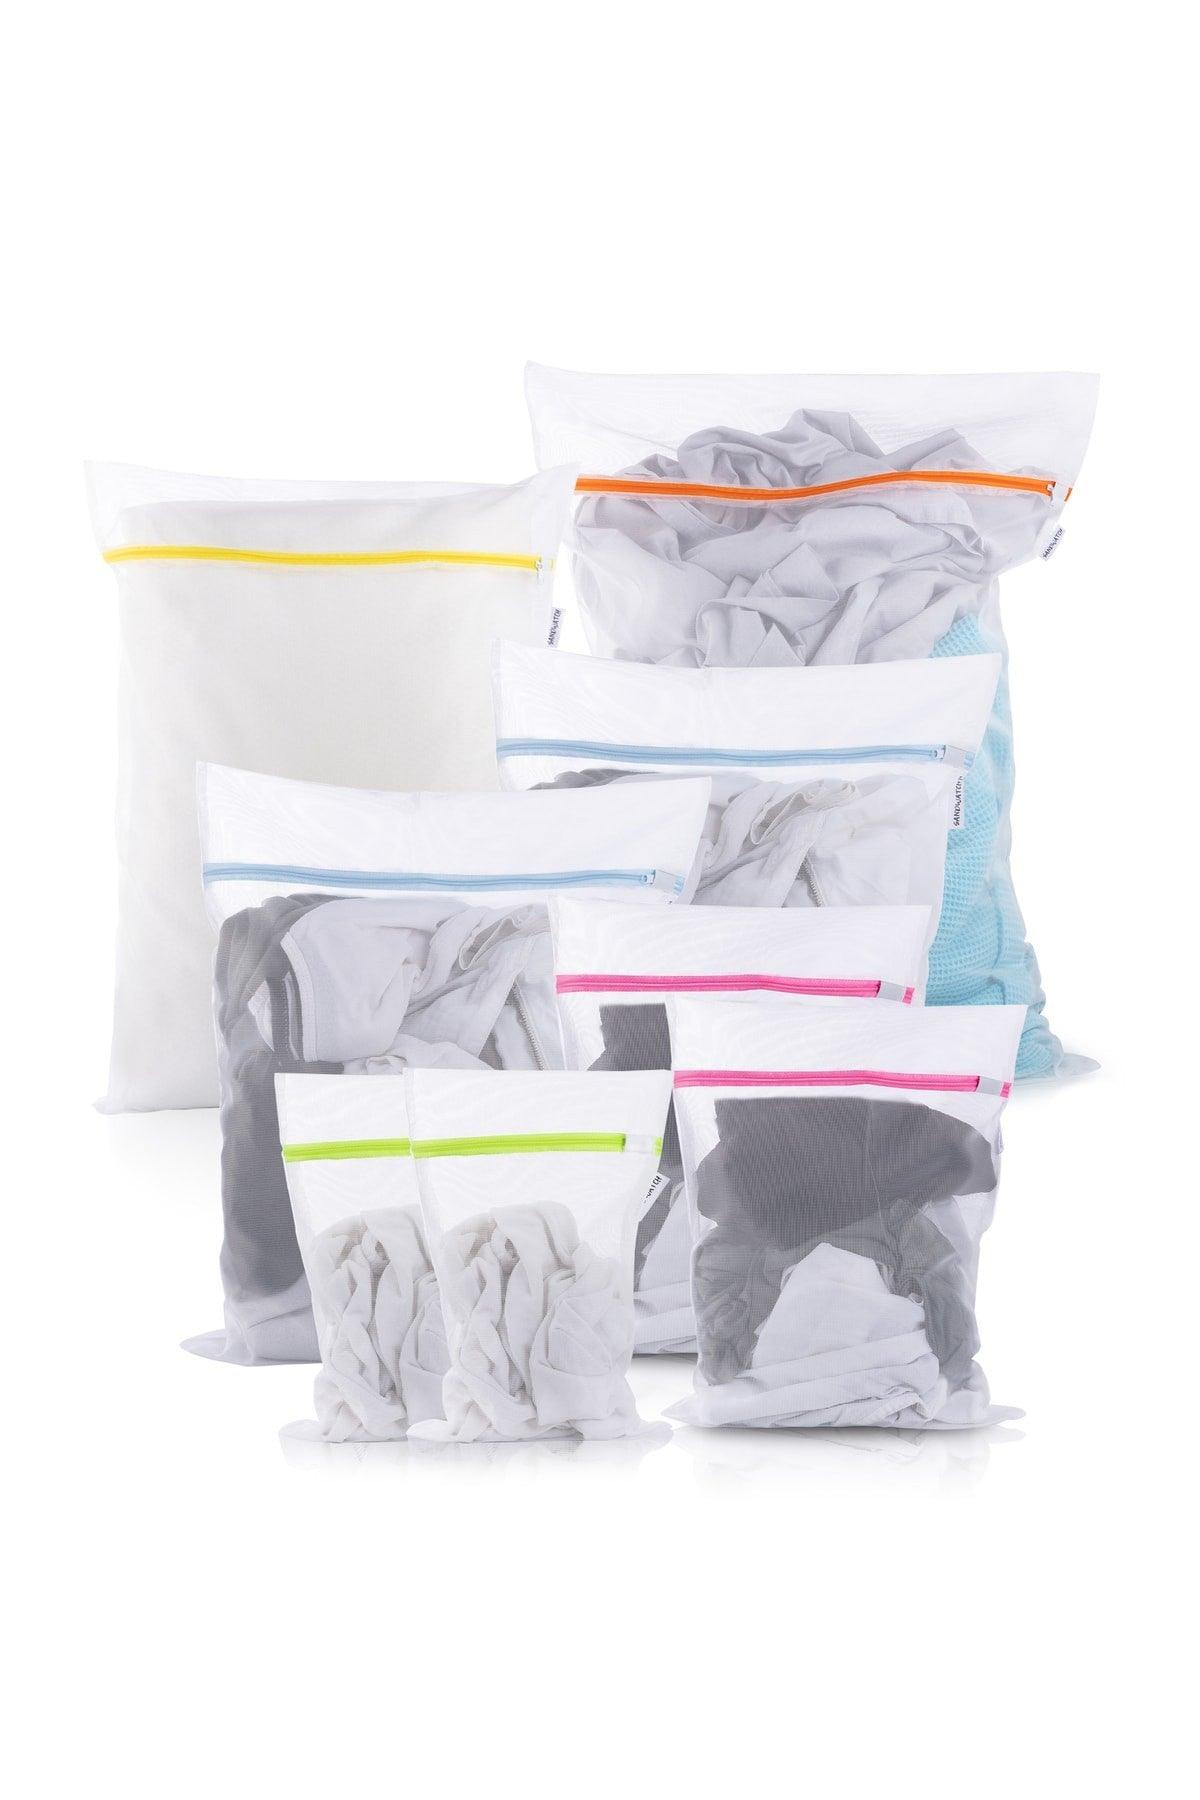 8 Pcs Laundry Net Bag Washing